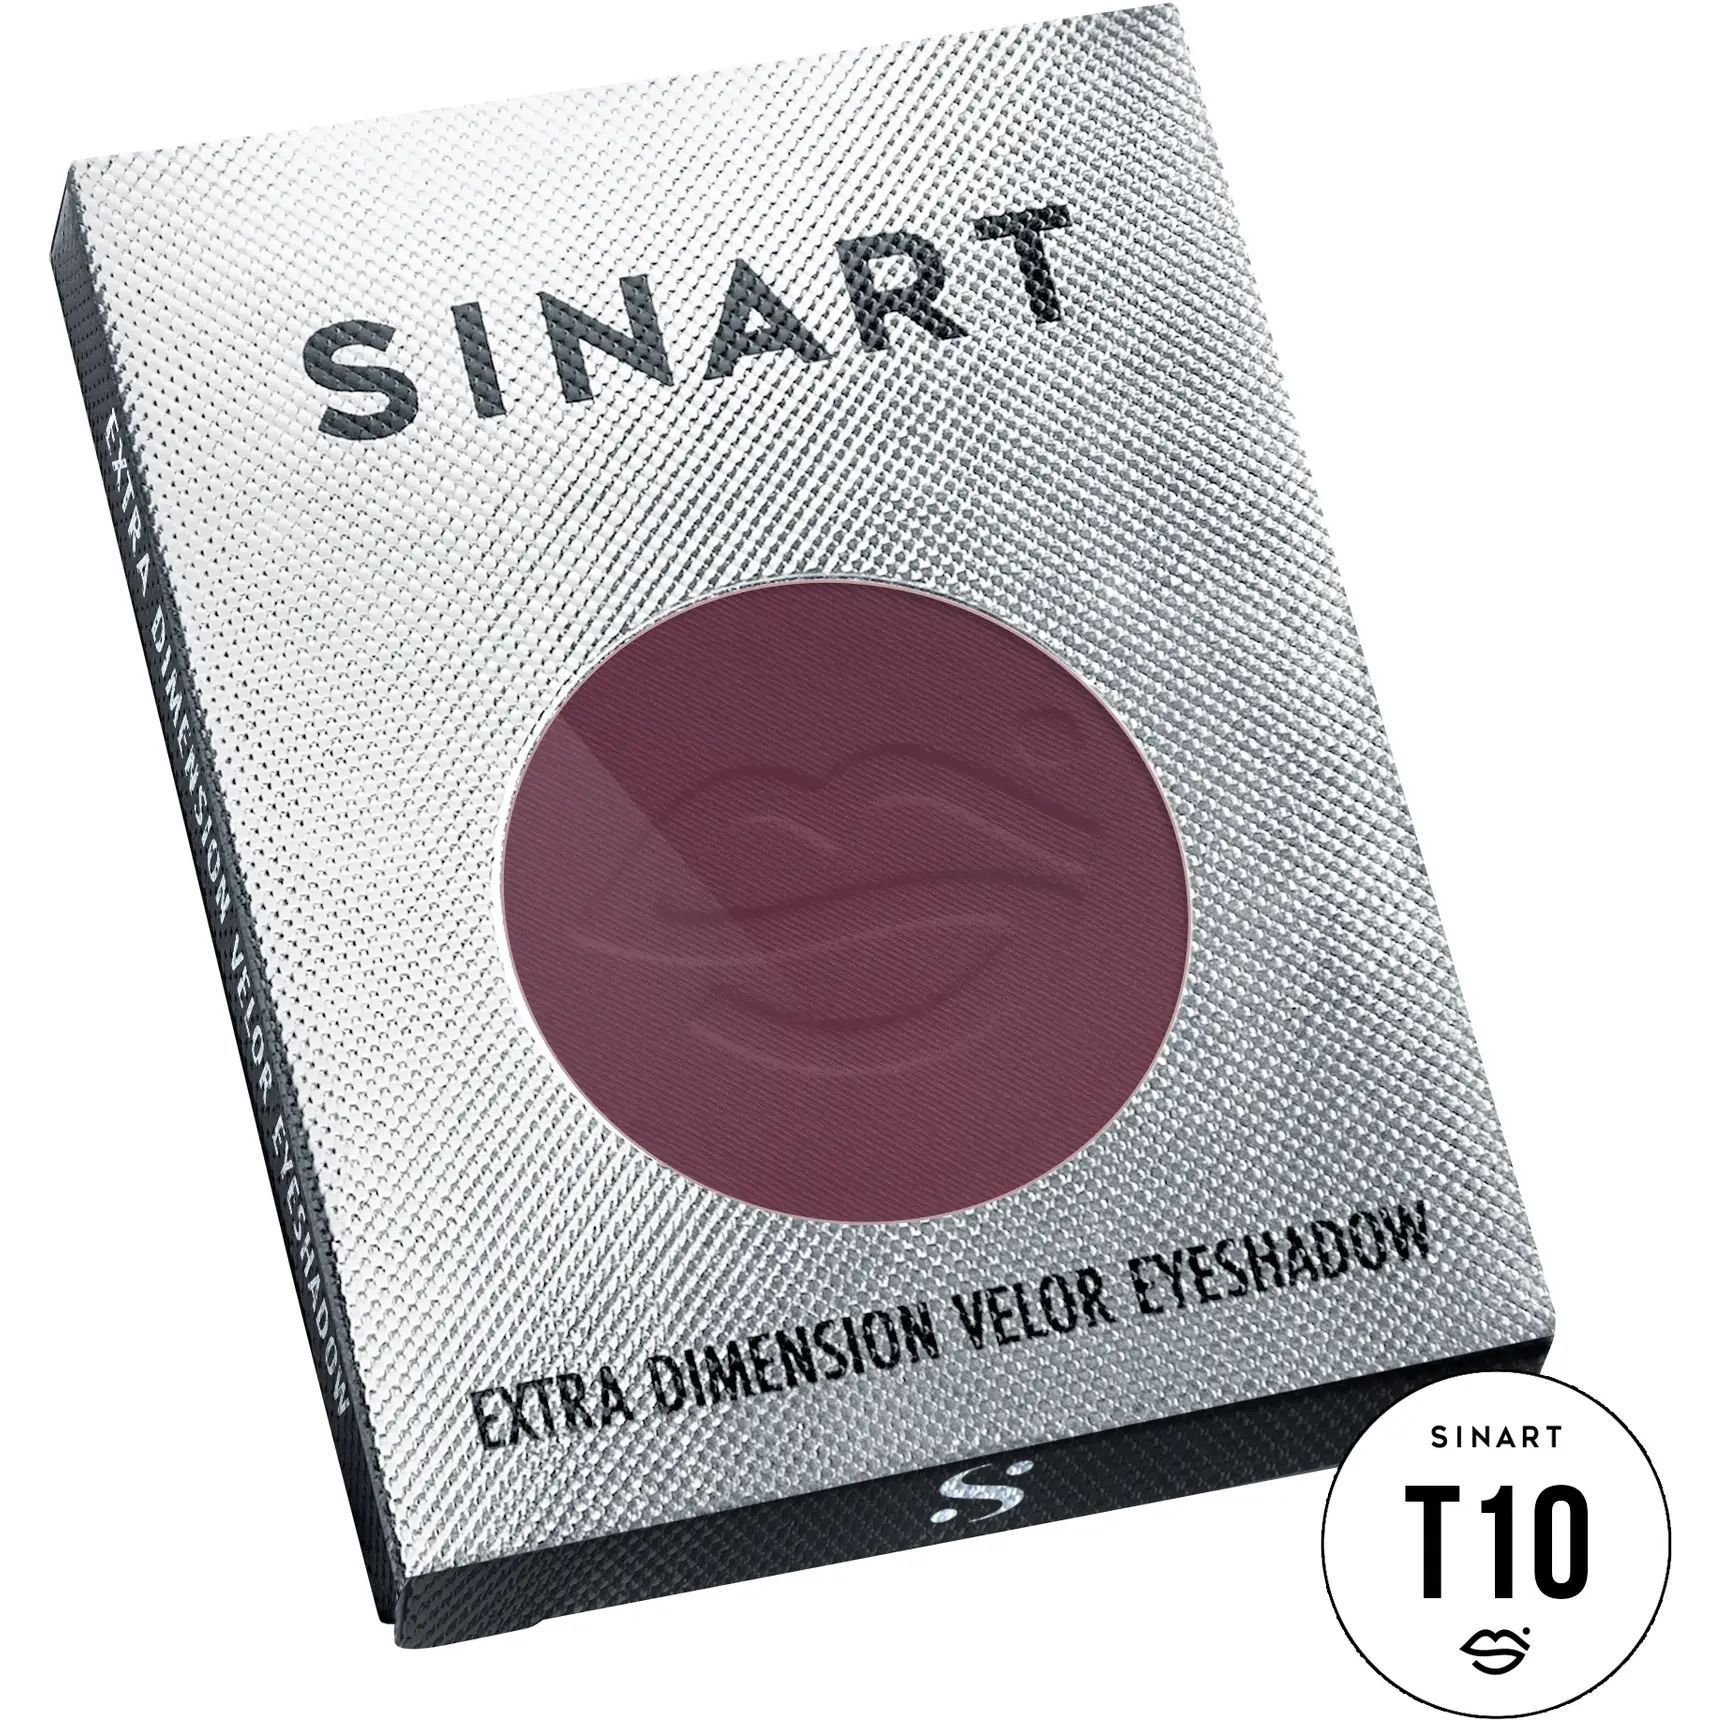 Прессованные тени для век Sinart T10 Extra Dimension Velor Eyeshadow - фото 3